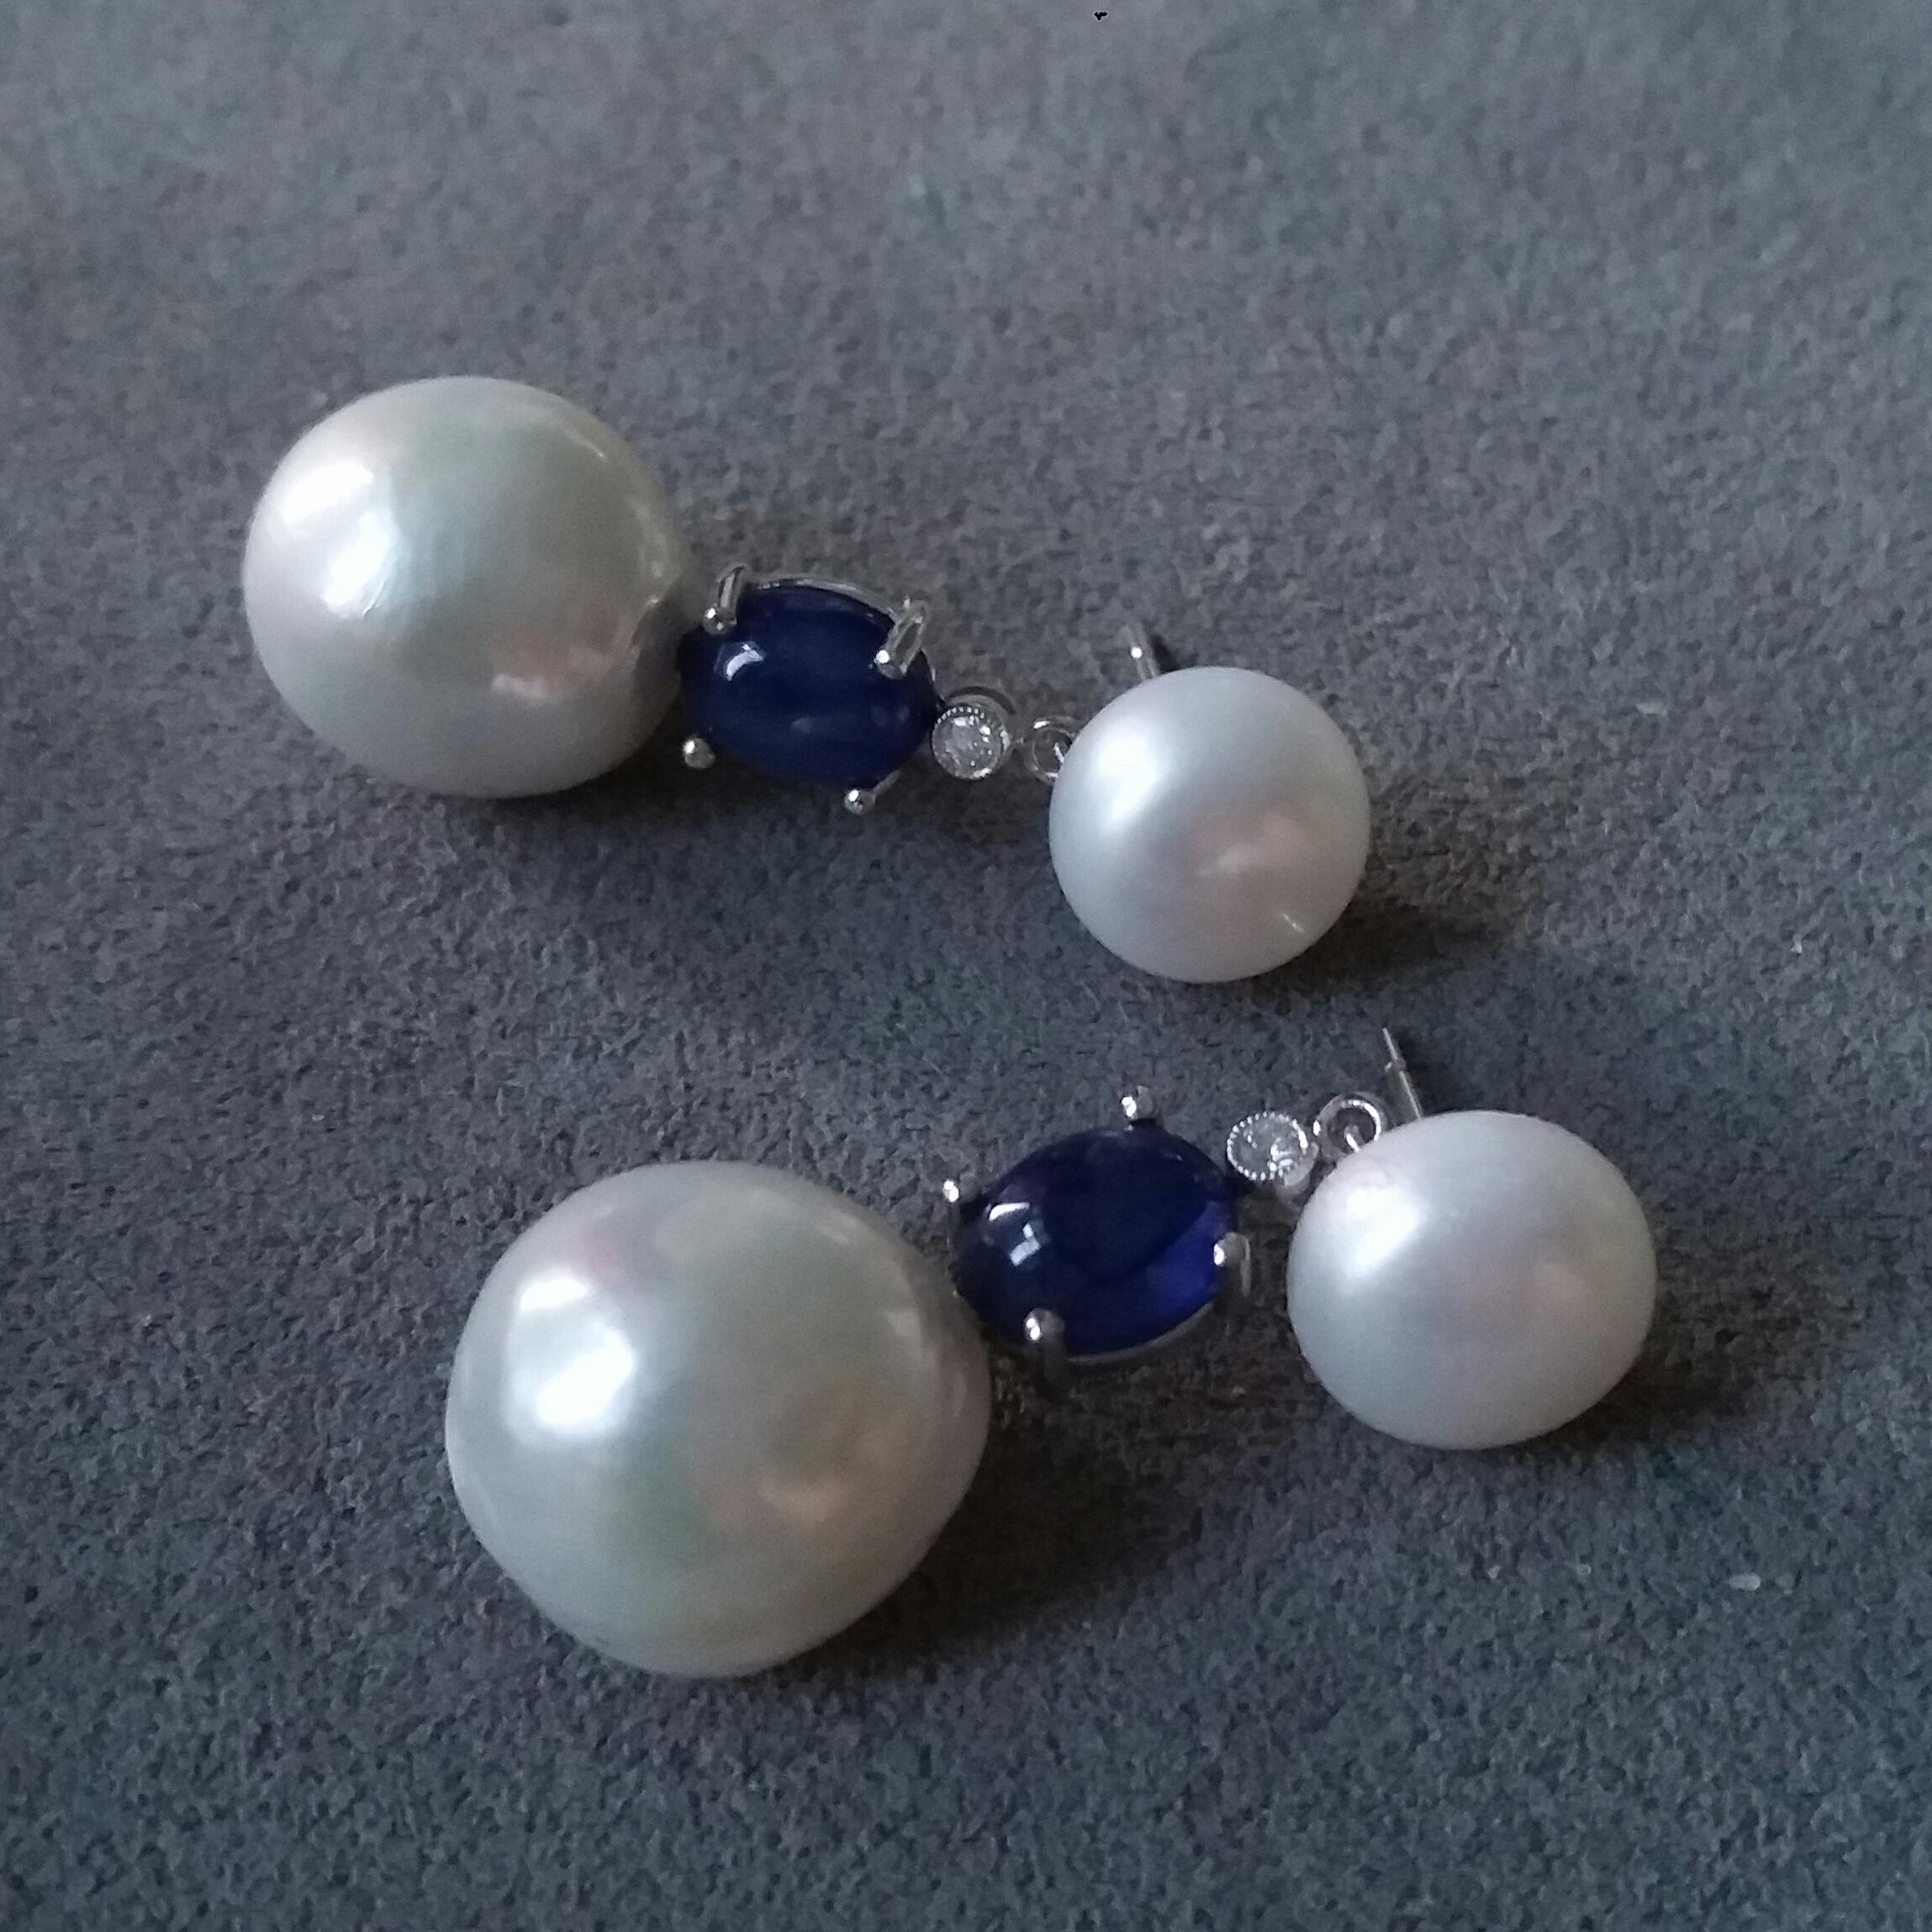 2 runde Perlen mit einem Durchmesser von 10 mm im oberen Teil, im mittleren Teil mit 2 kleinen Diamanten im Vollschliff und 2 ovalen blauen Saphiren als Cabochons, im unteren Teil mit 2 Barockperlen von ca. 13 mm Durchmesser
Abmessungen
Top Perlen